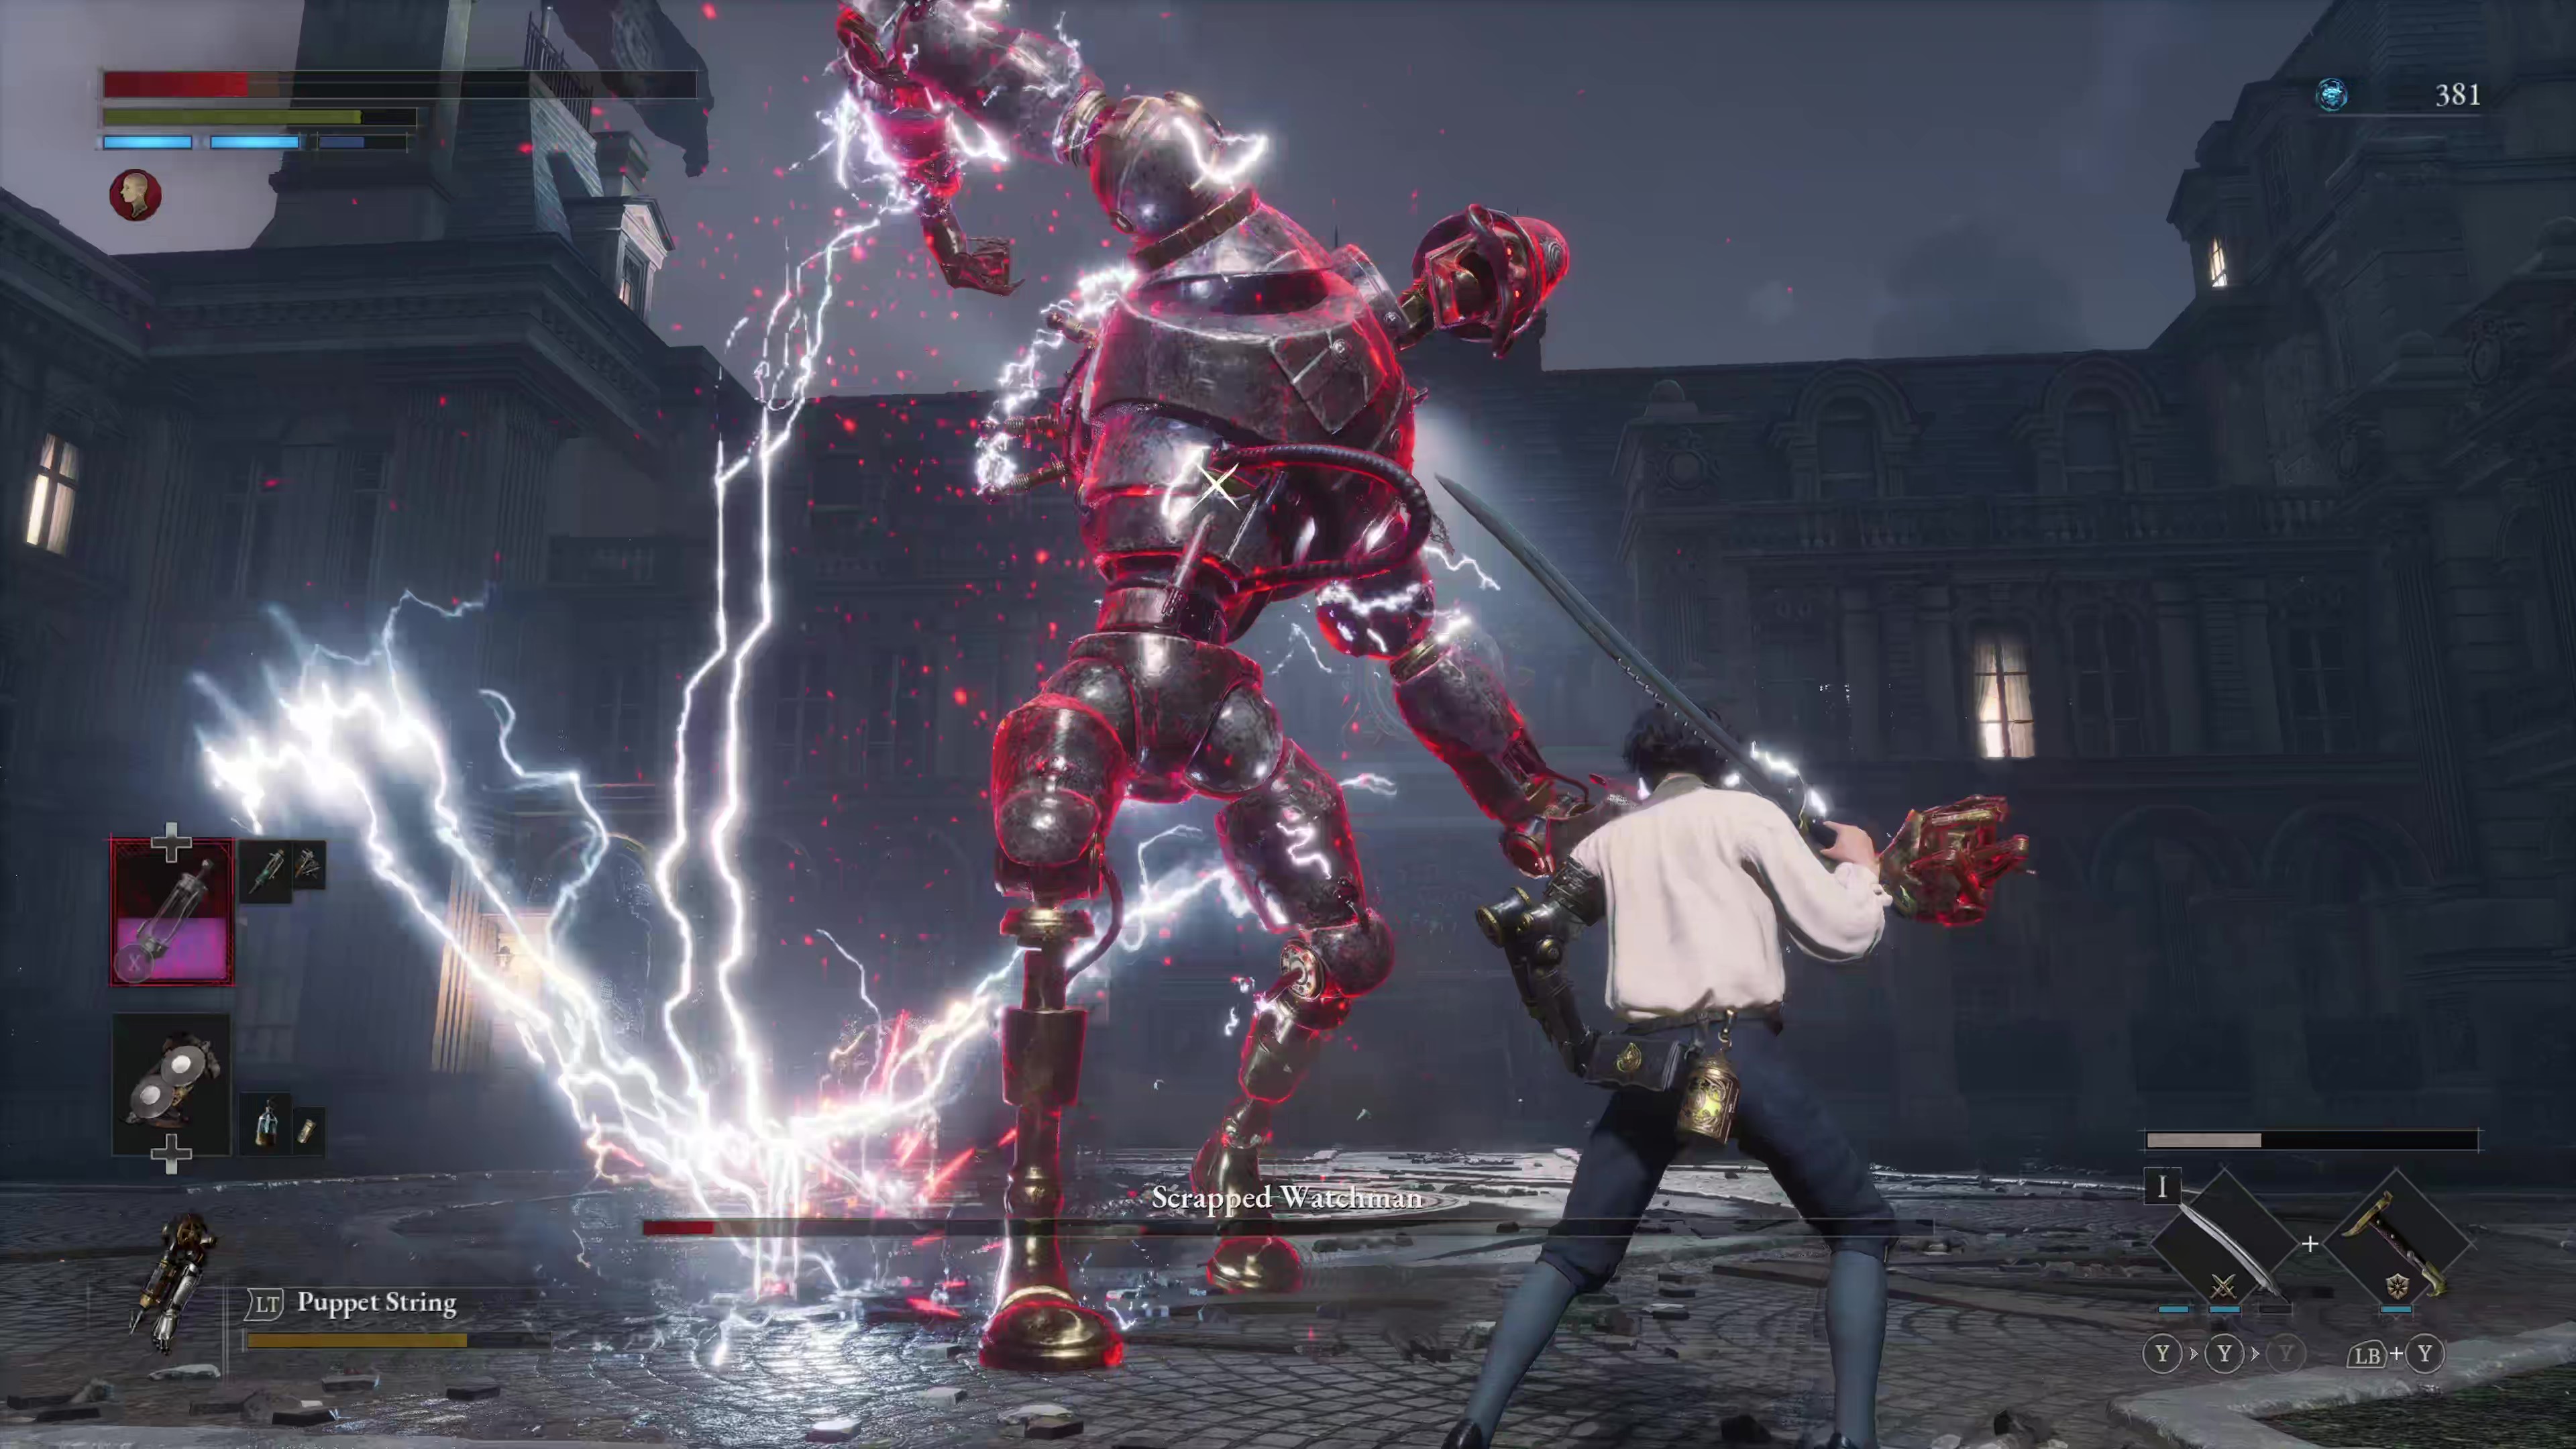 Captura de pantalla del juego del Scrapped Watchman realizando un ataque de furia en Lies of P.